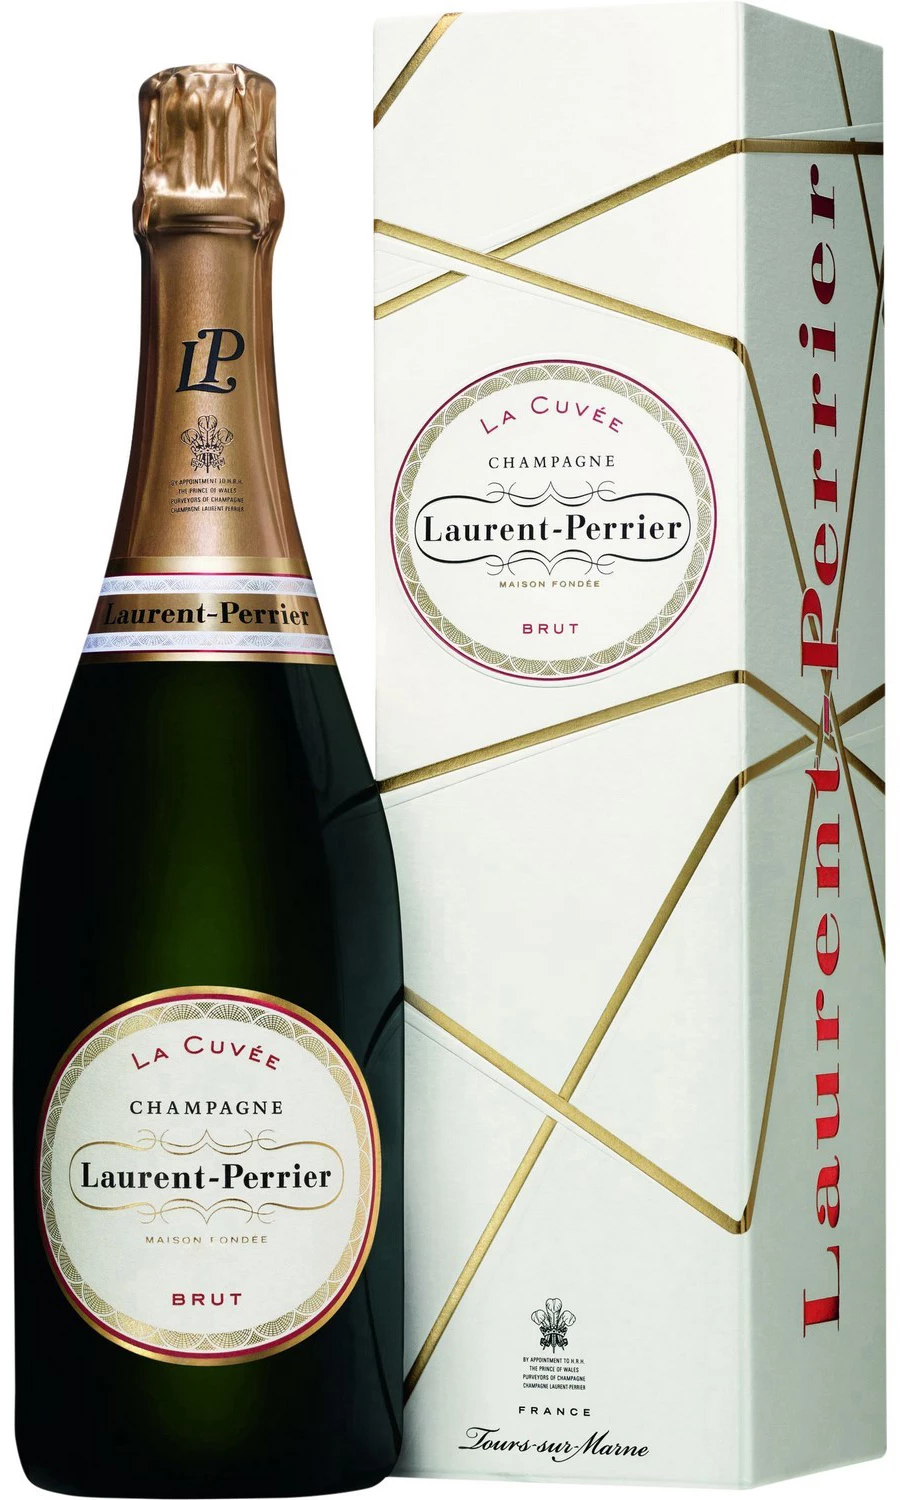 Champagne La Cuvée Brut 12% 75cl - LAURENT-PERRIER